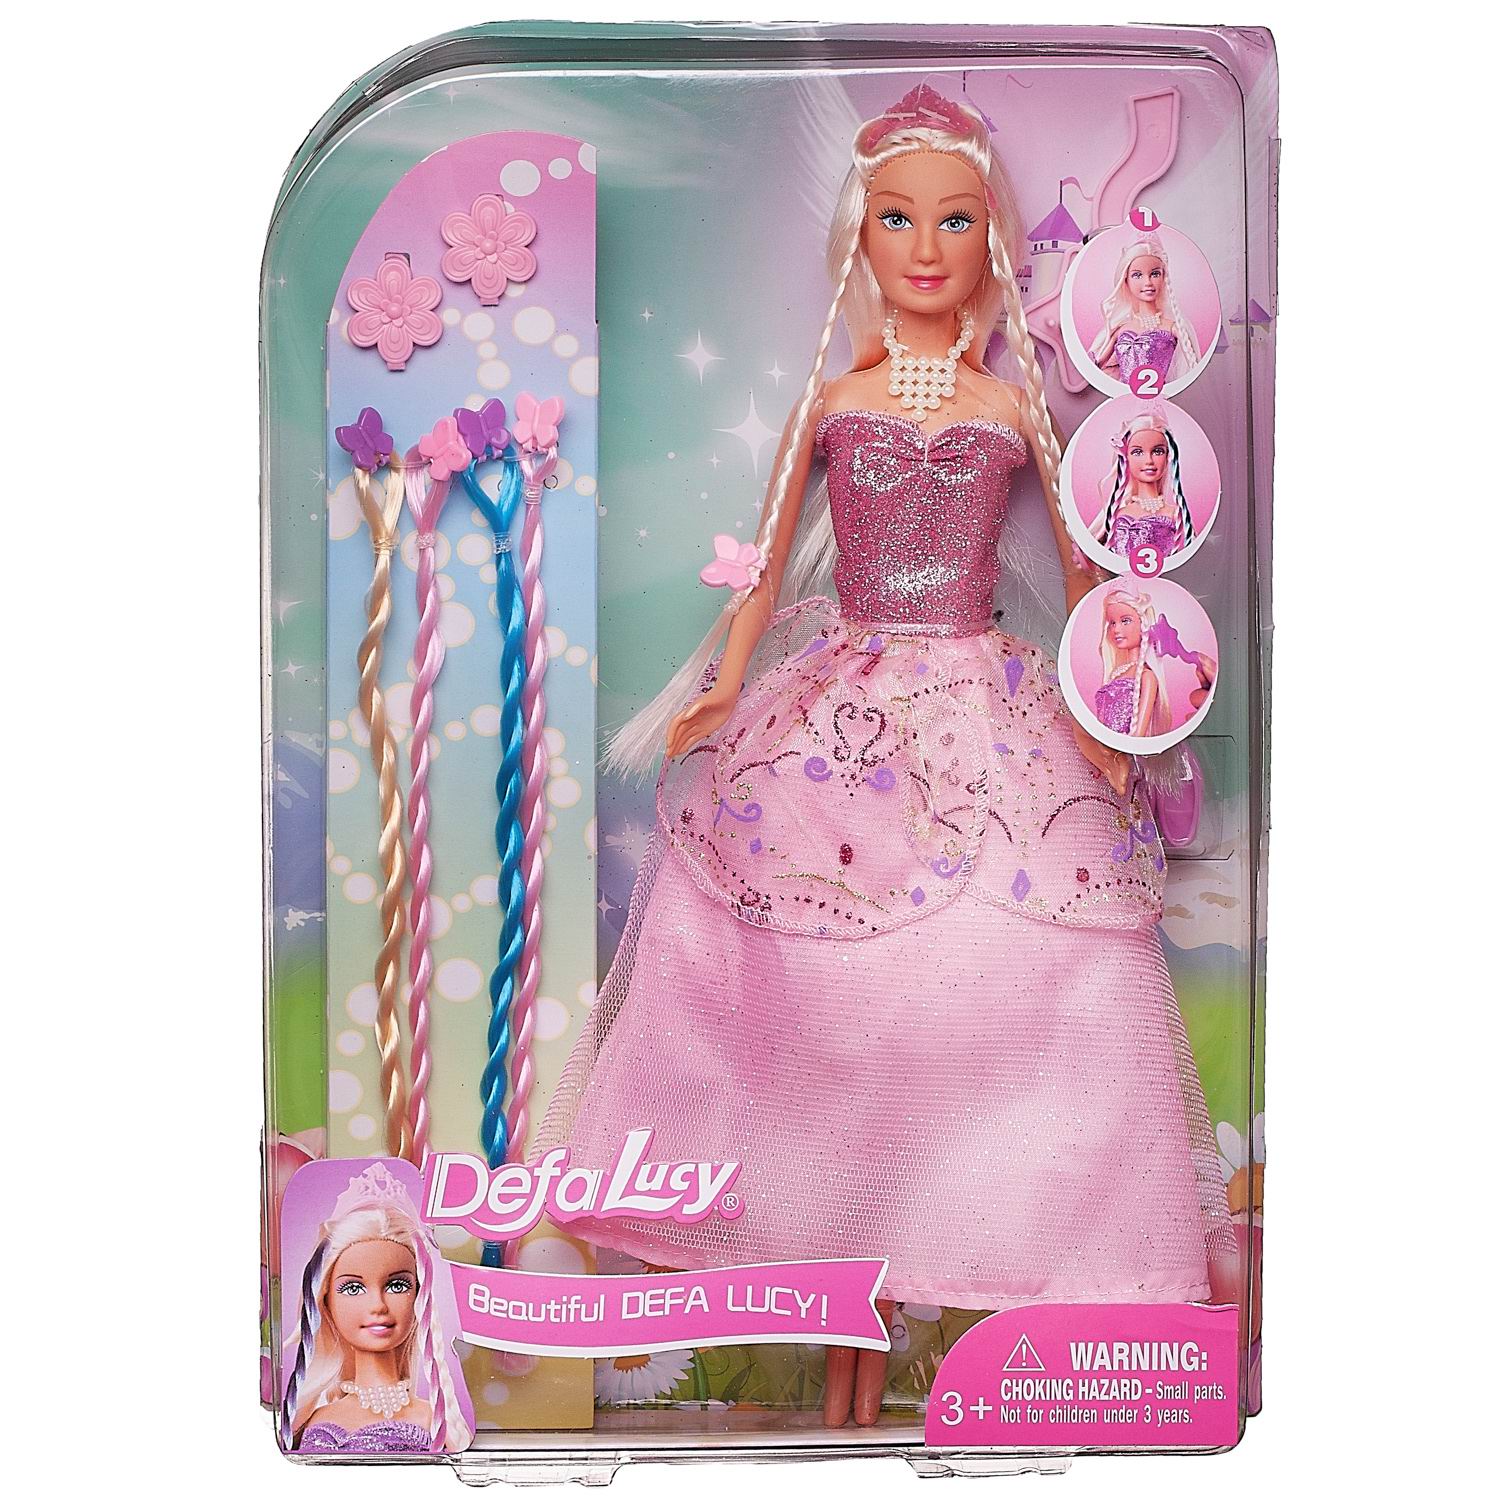 Кукла Defa Lucy в розовом платье в наборе с игровыми предметами, 29 см кукла в наборе с аксессуарами римские каникулы 29 см mia 200669824 2